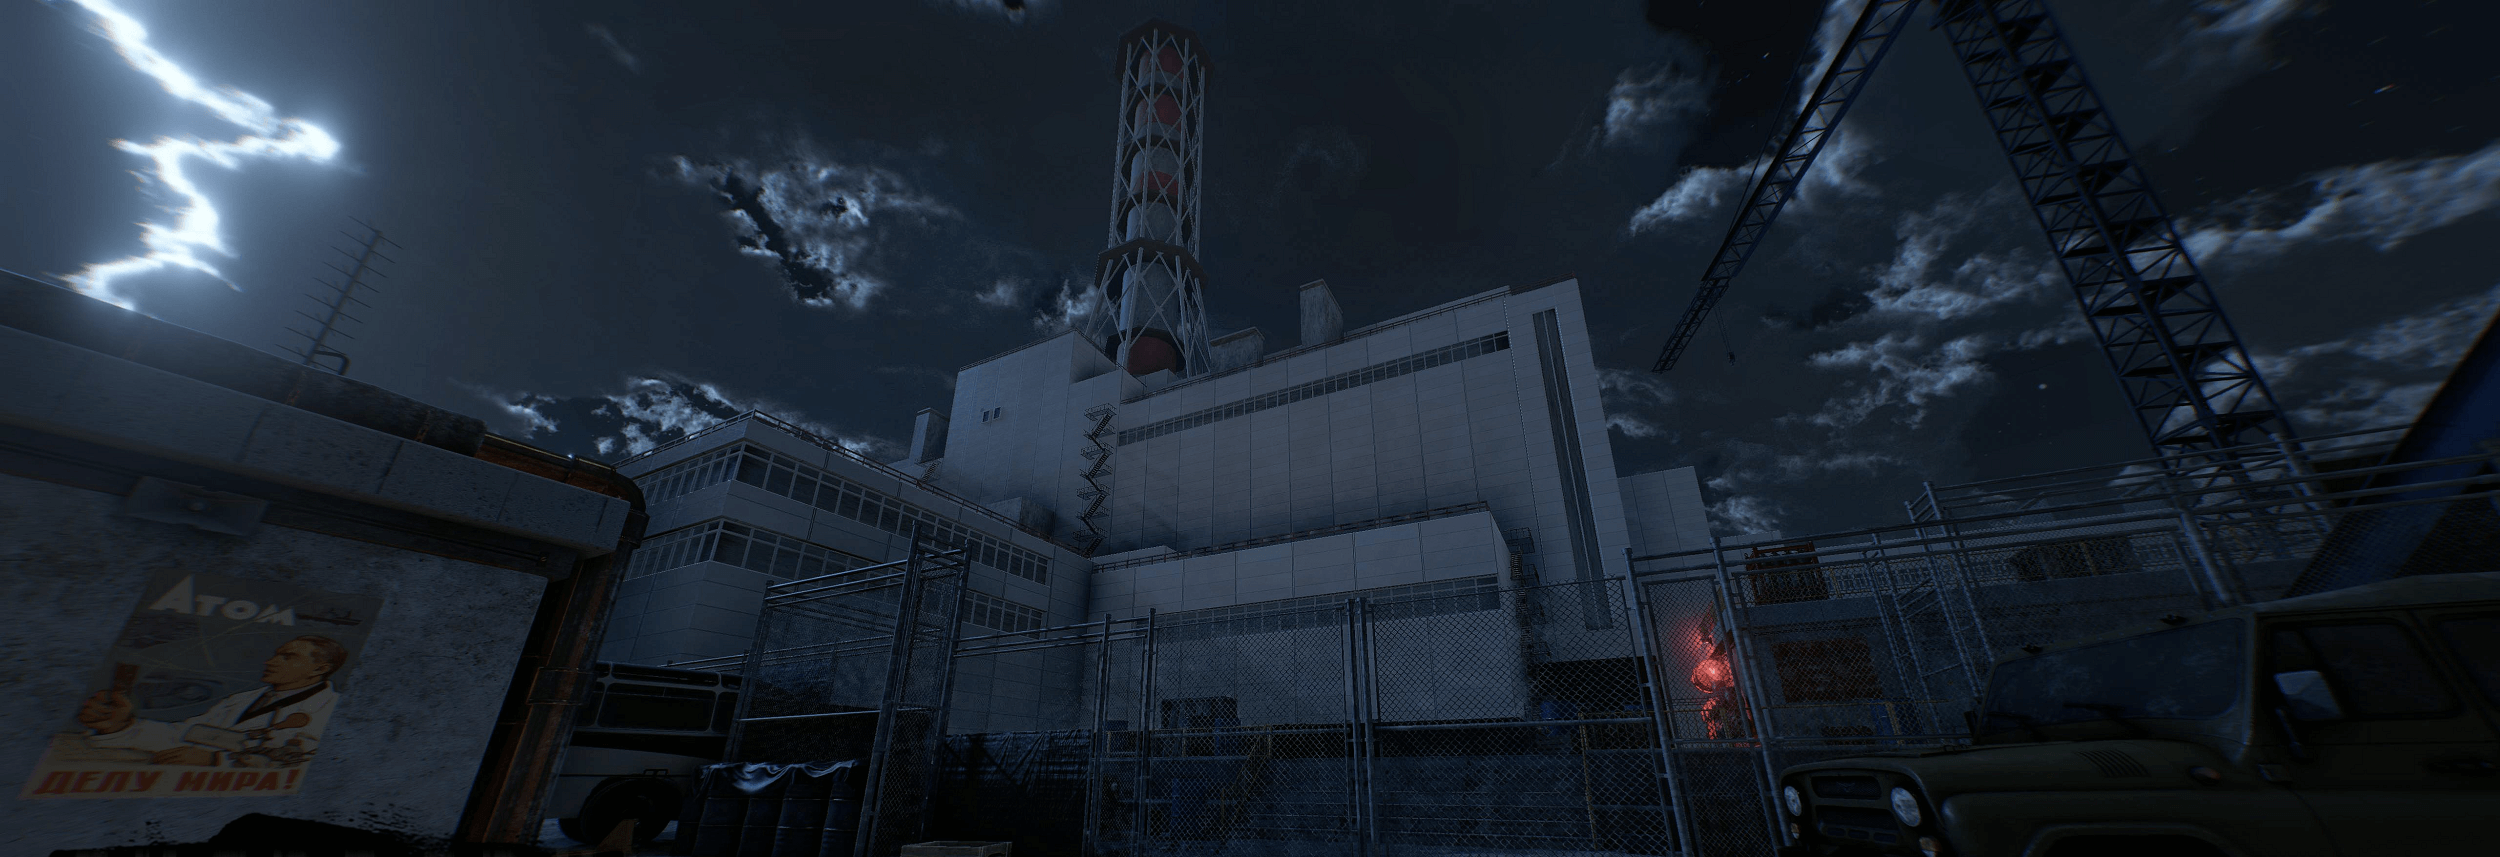 Віртуальна Квест-кімната “Чорнобиль”